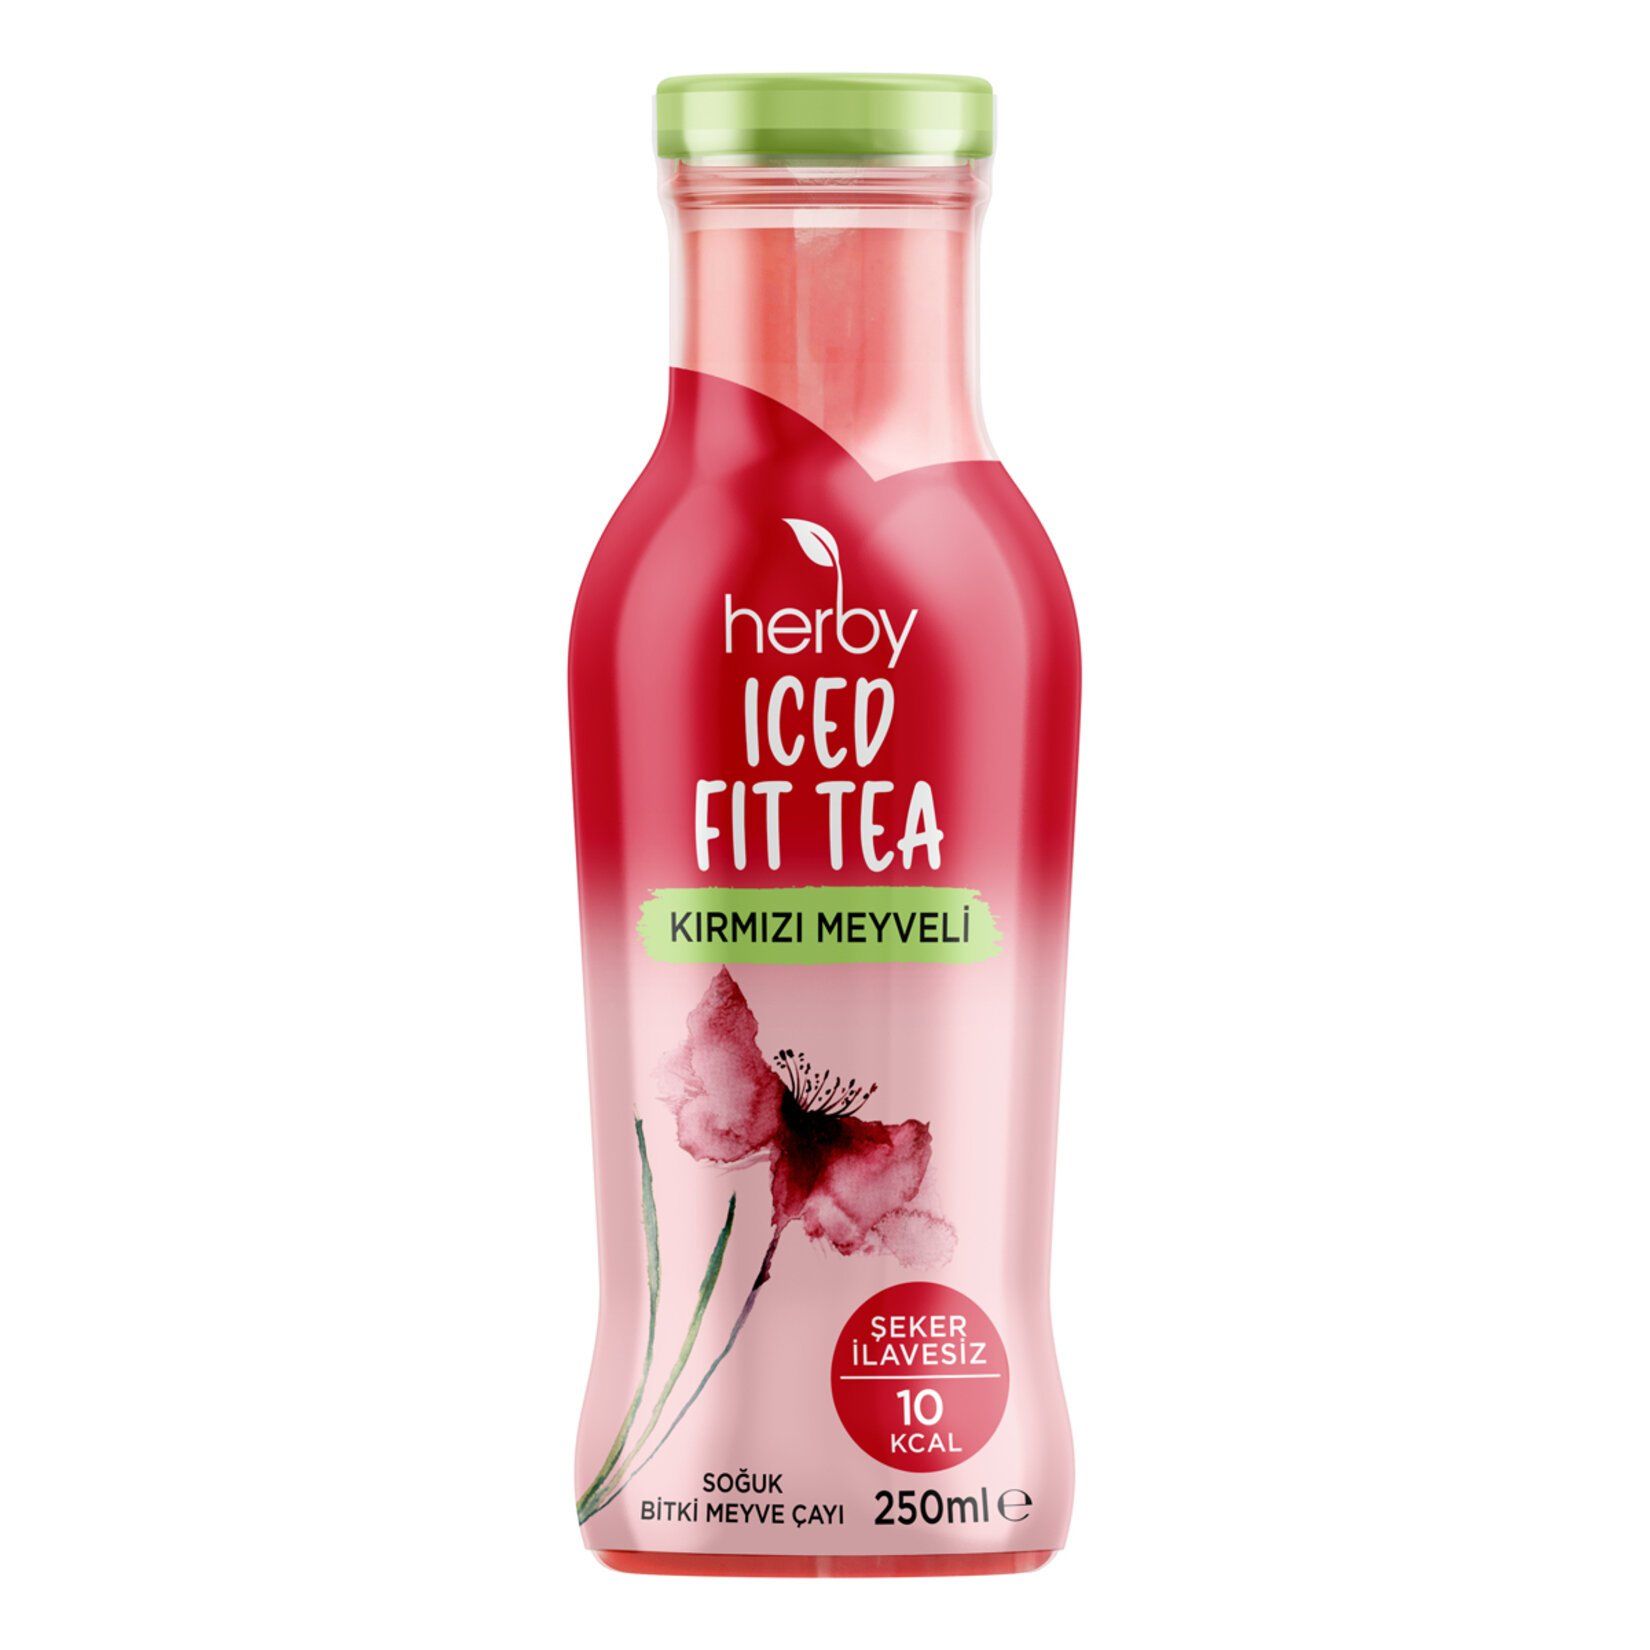 Herby Kırmızı Meyveli Iced Fit Tea, 250 ml